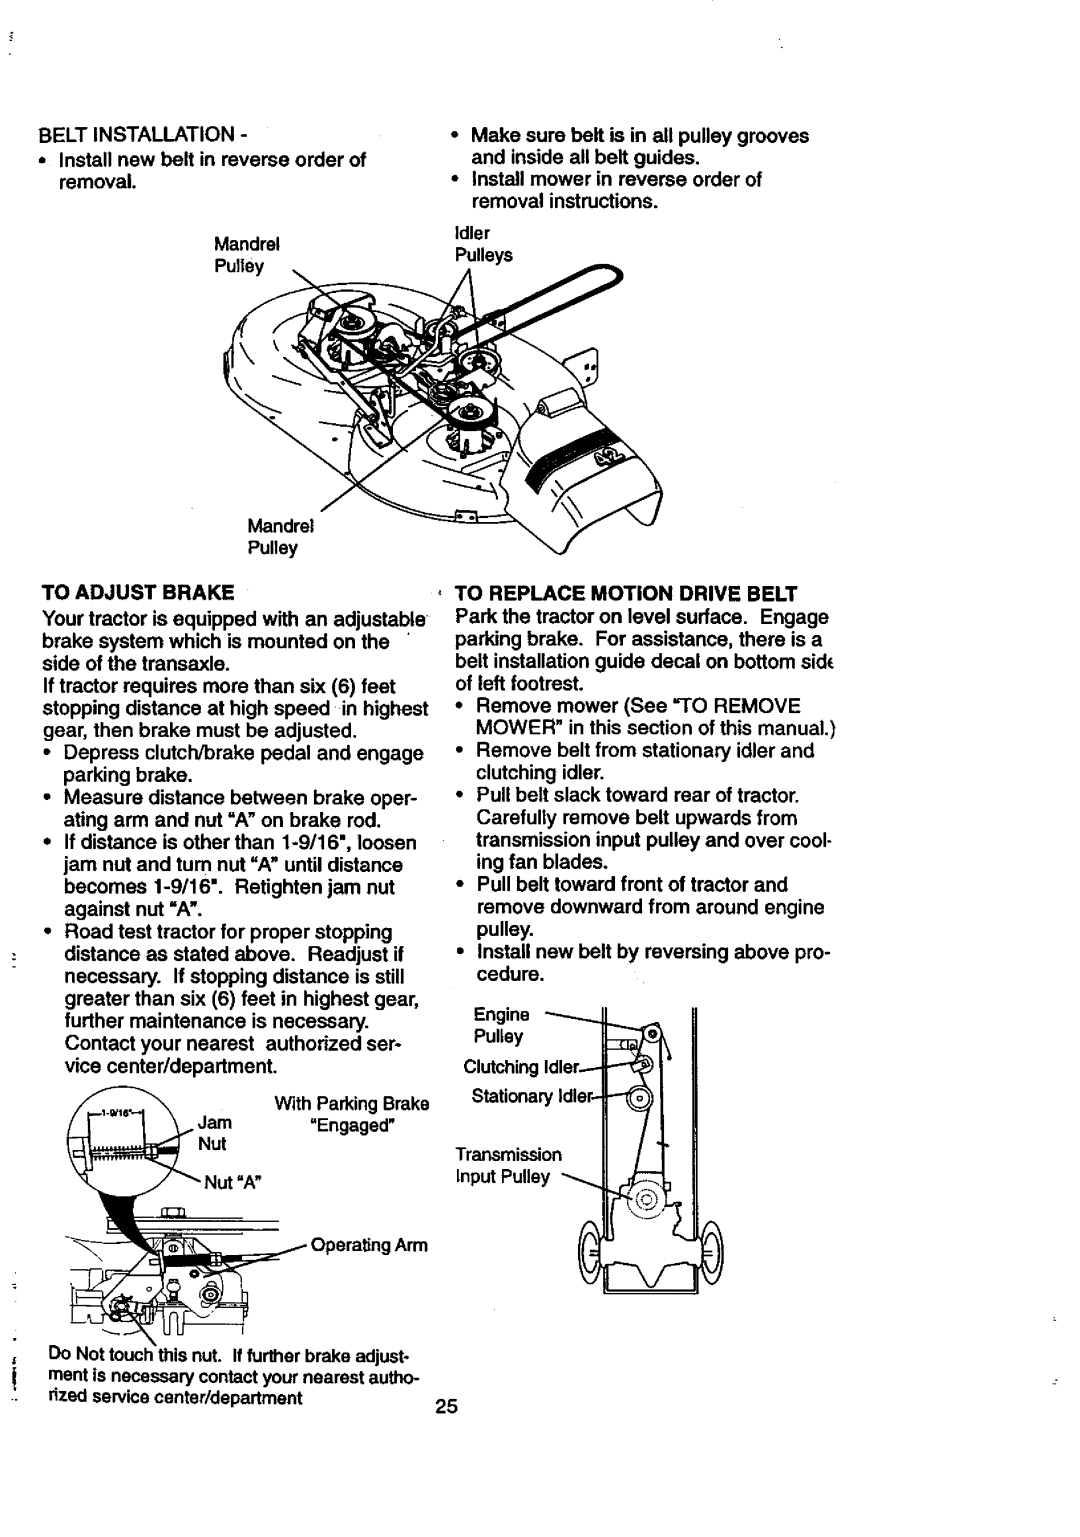 Craftsman 917.27084 manual Beltinstallation, •Installnewbolt in reverseorder of removal 